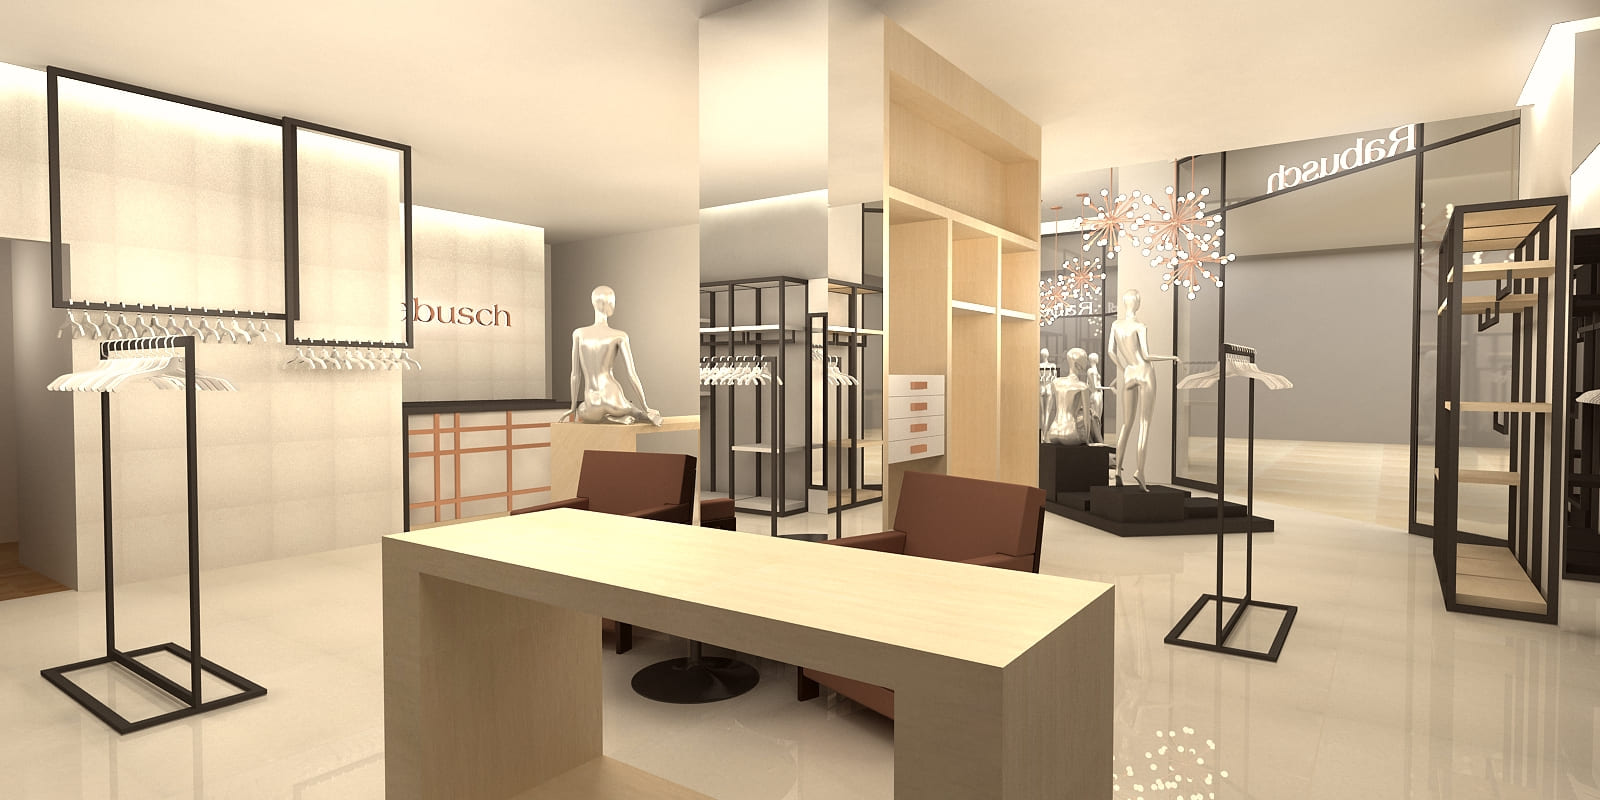 Arquitetura de interior de loja de roupas e acessórios femininos para a marca de moda Rabush.